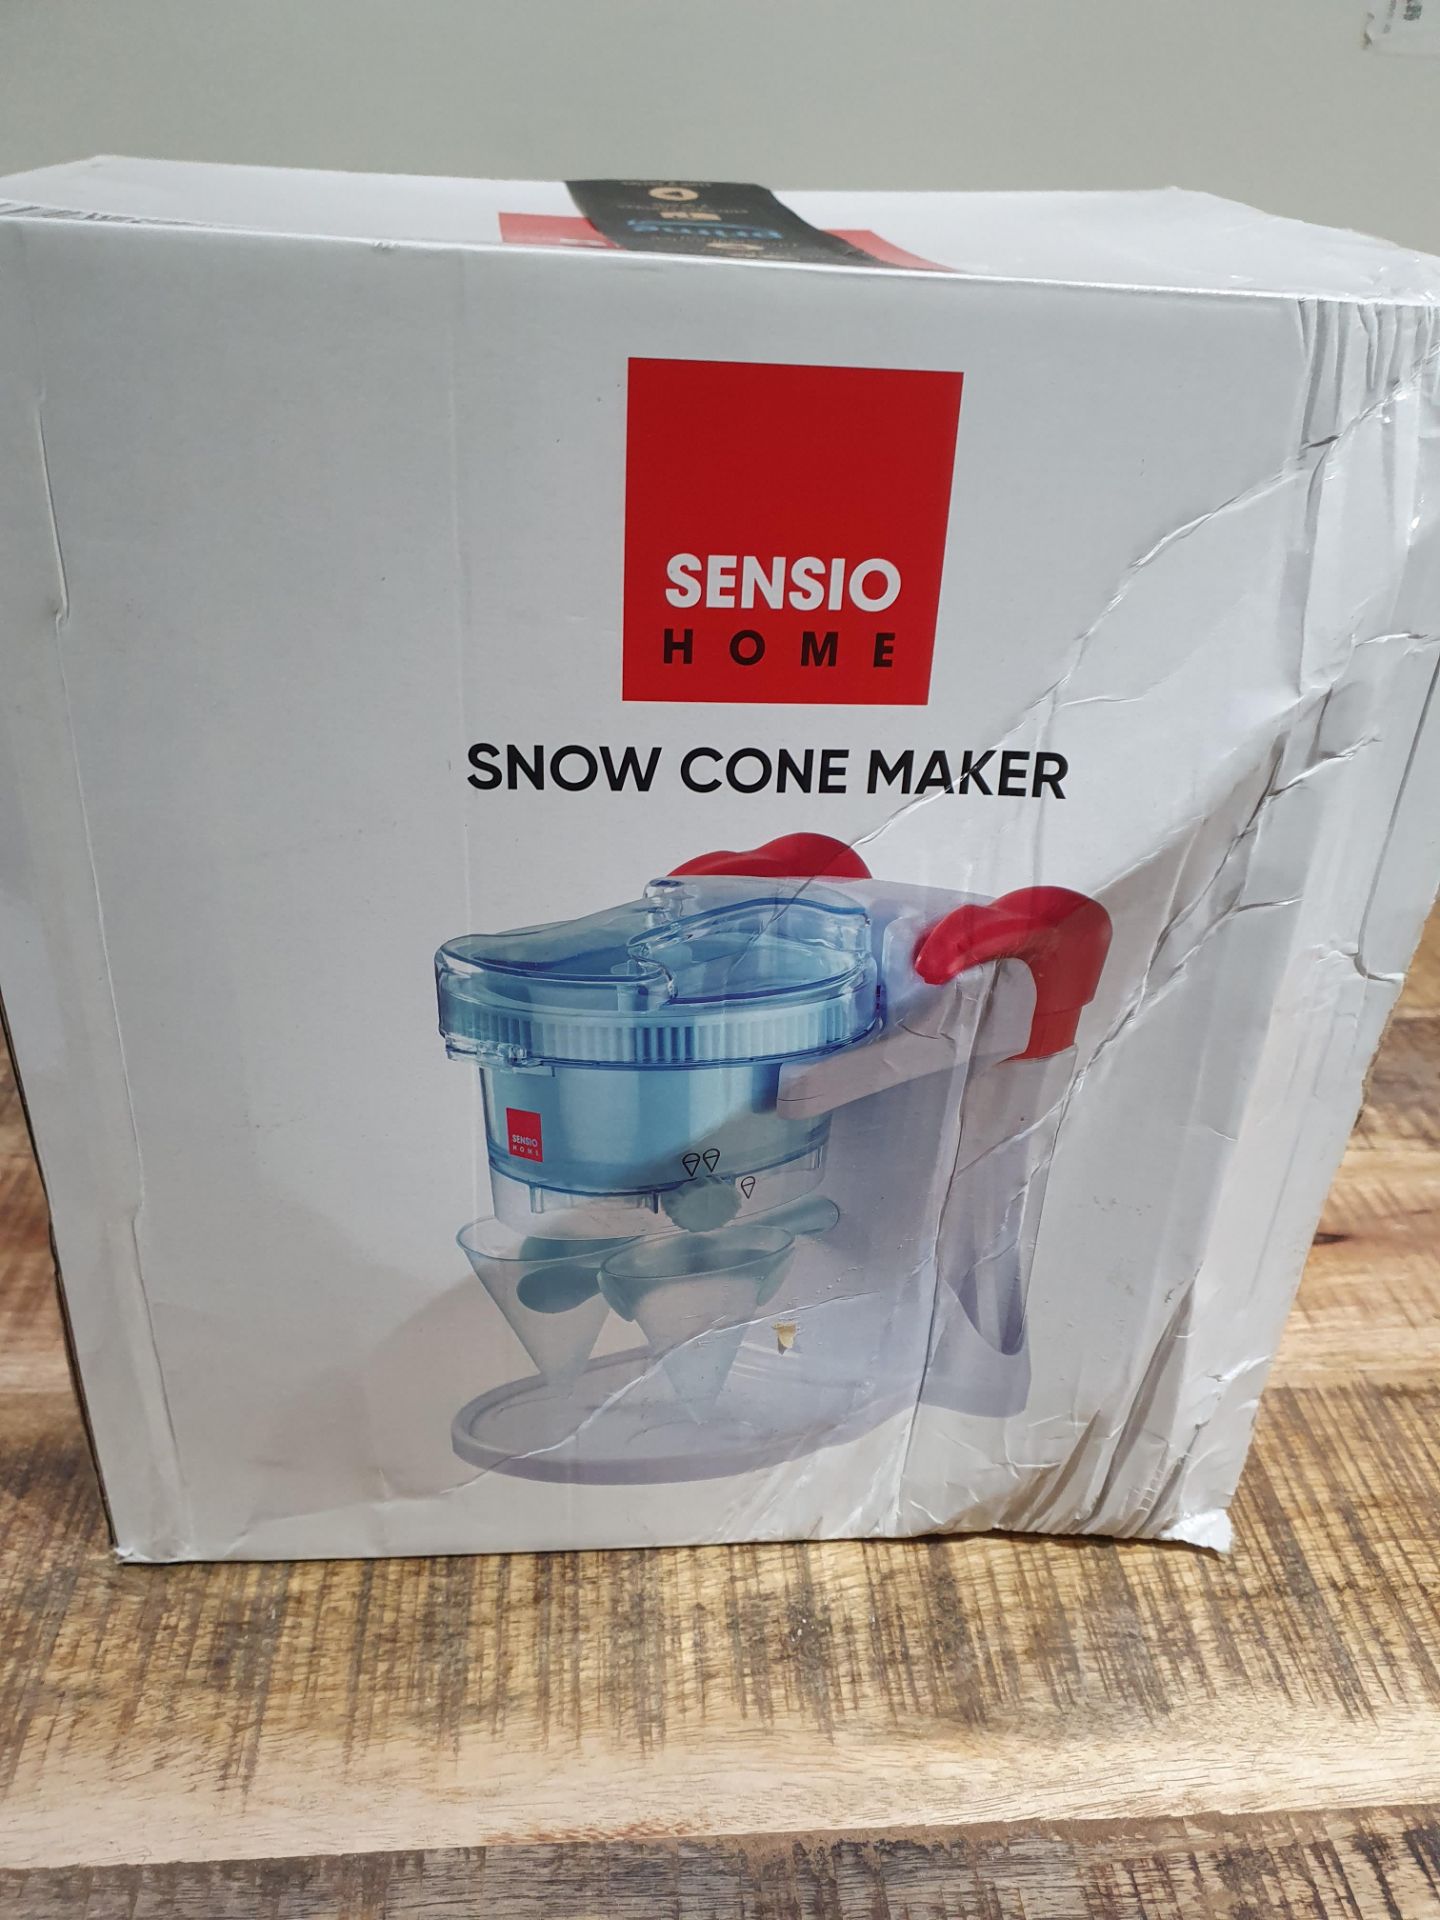 SENSIO HOME SNOW CONE MAKER